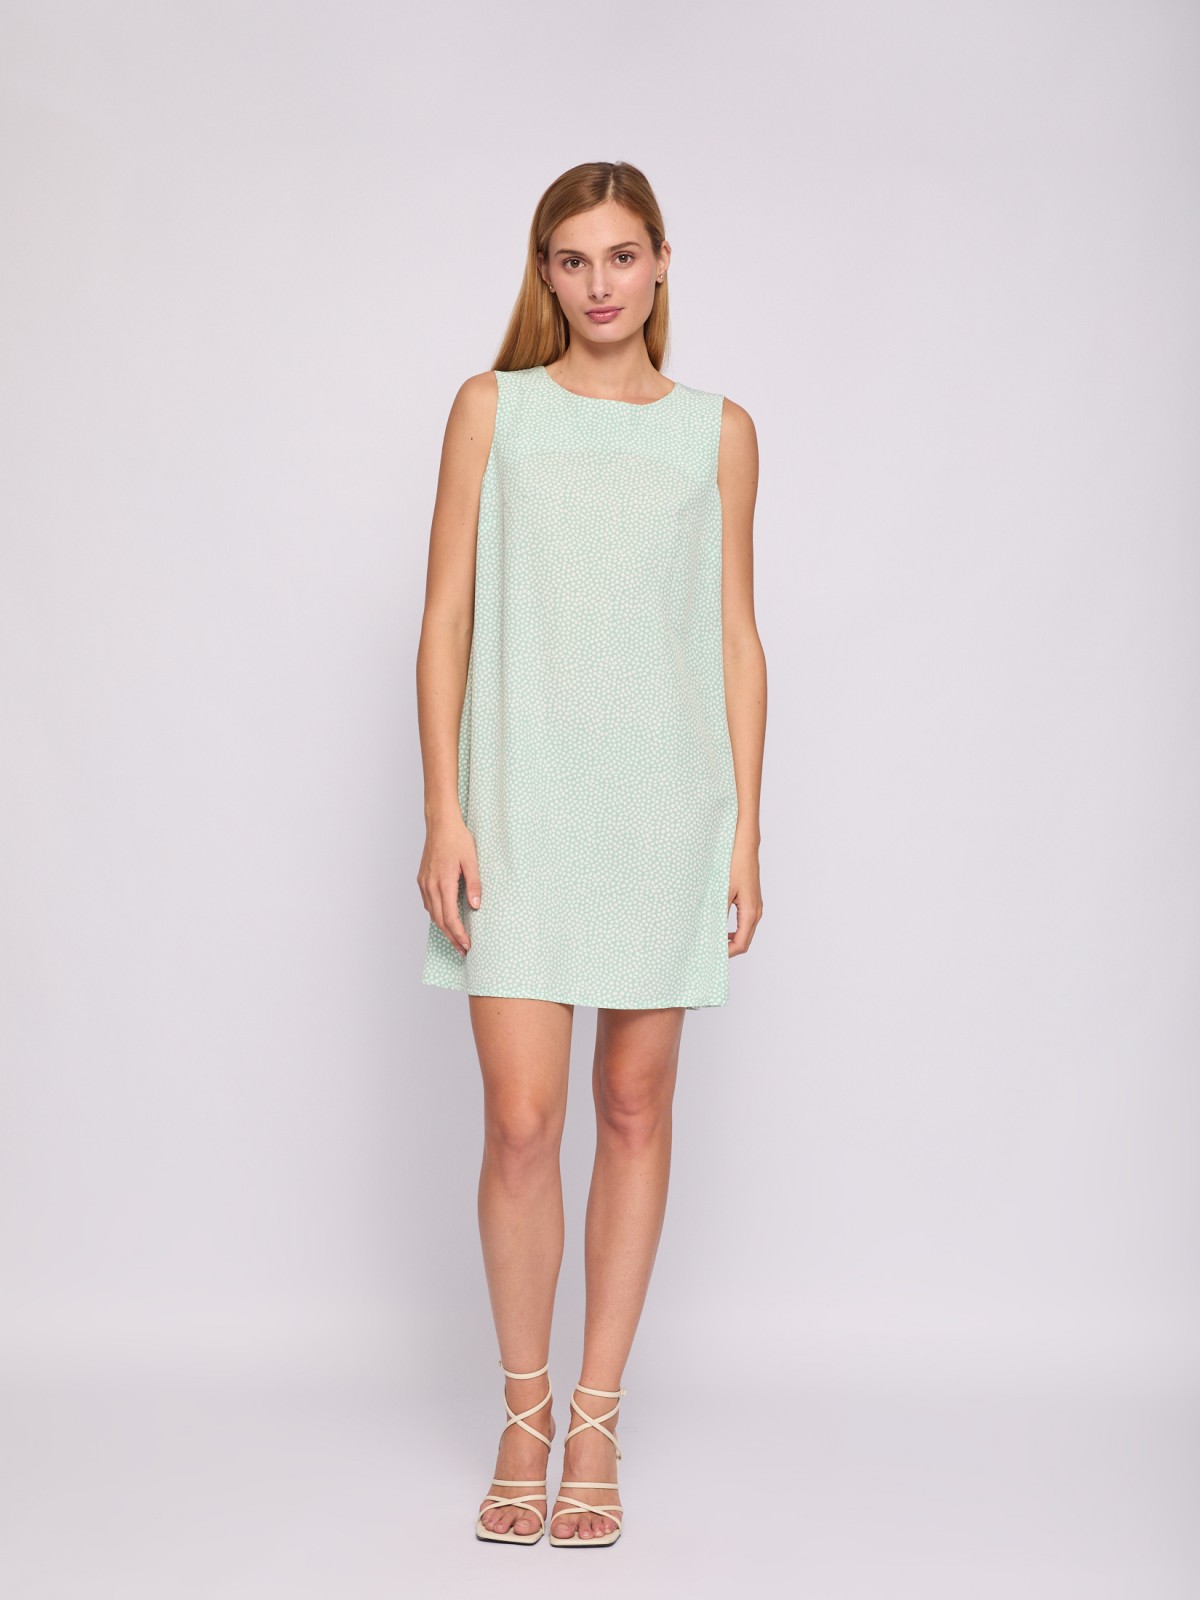 Платье мини без рукавов с вырезом на спине zolla 024238262232, цвет светло-зеленый, размер XS